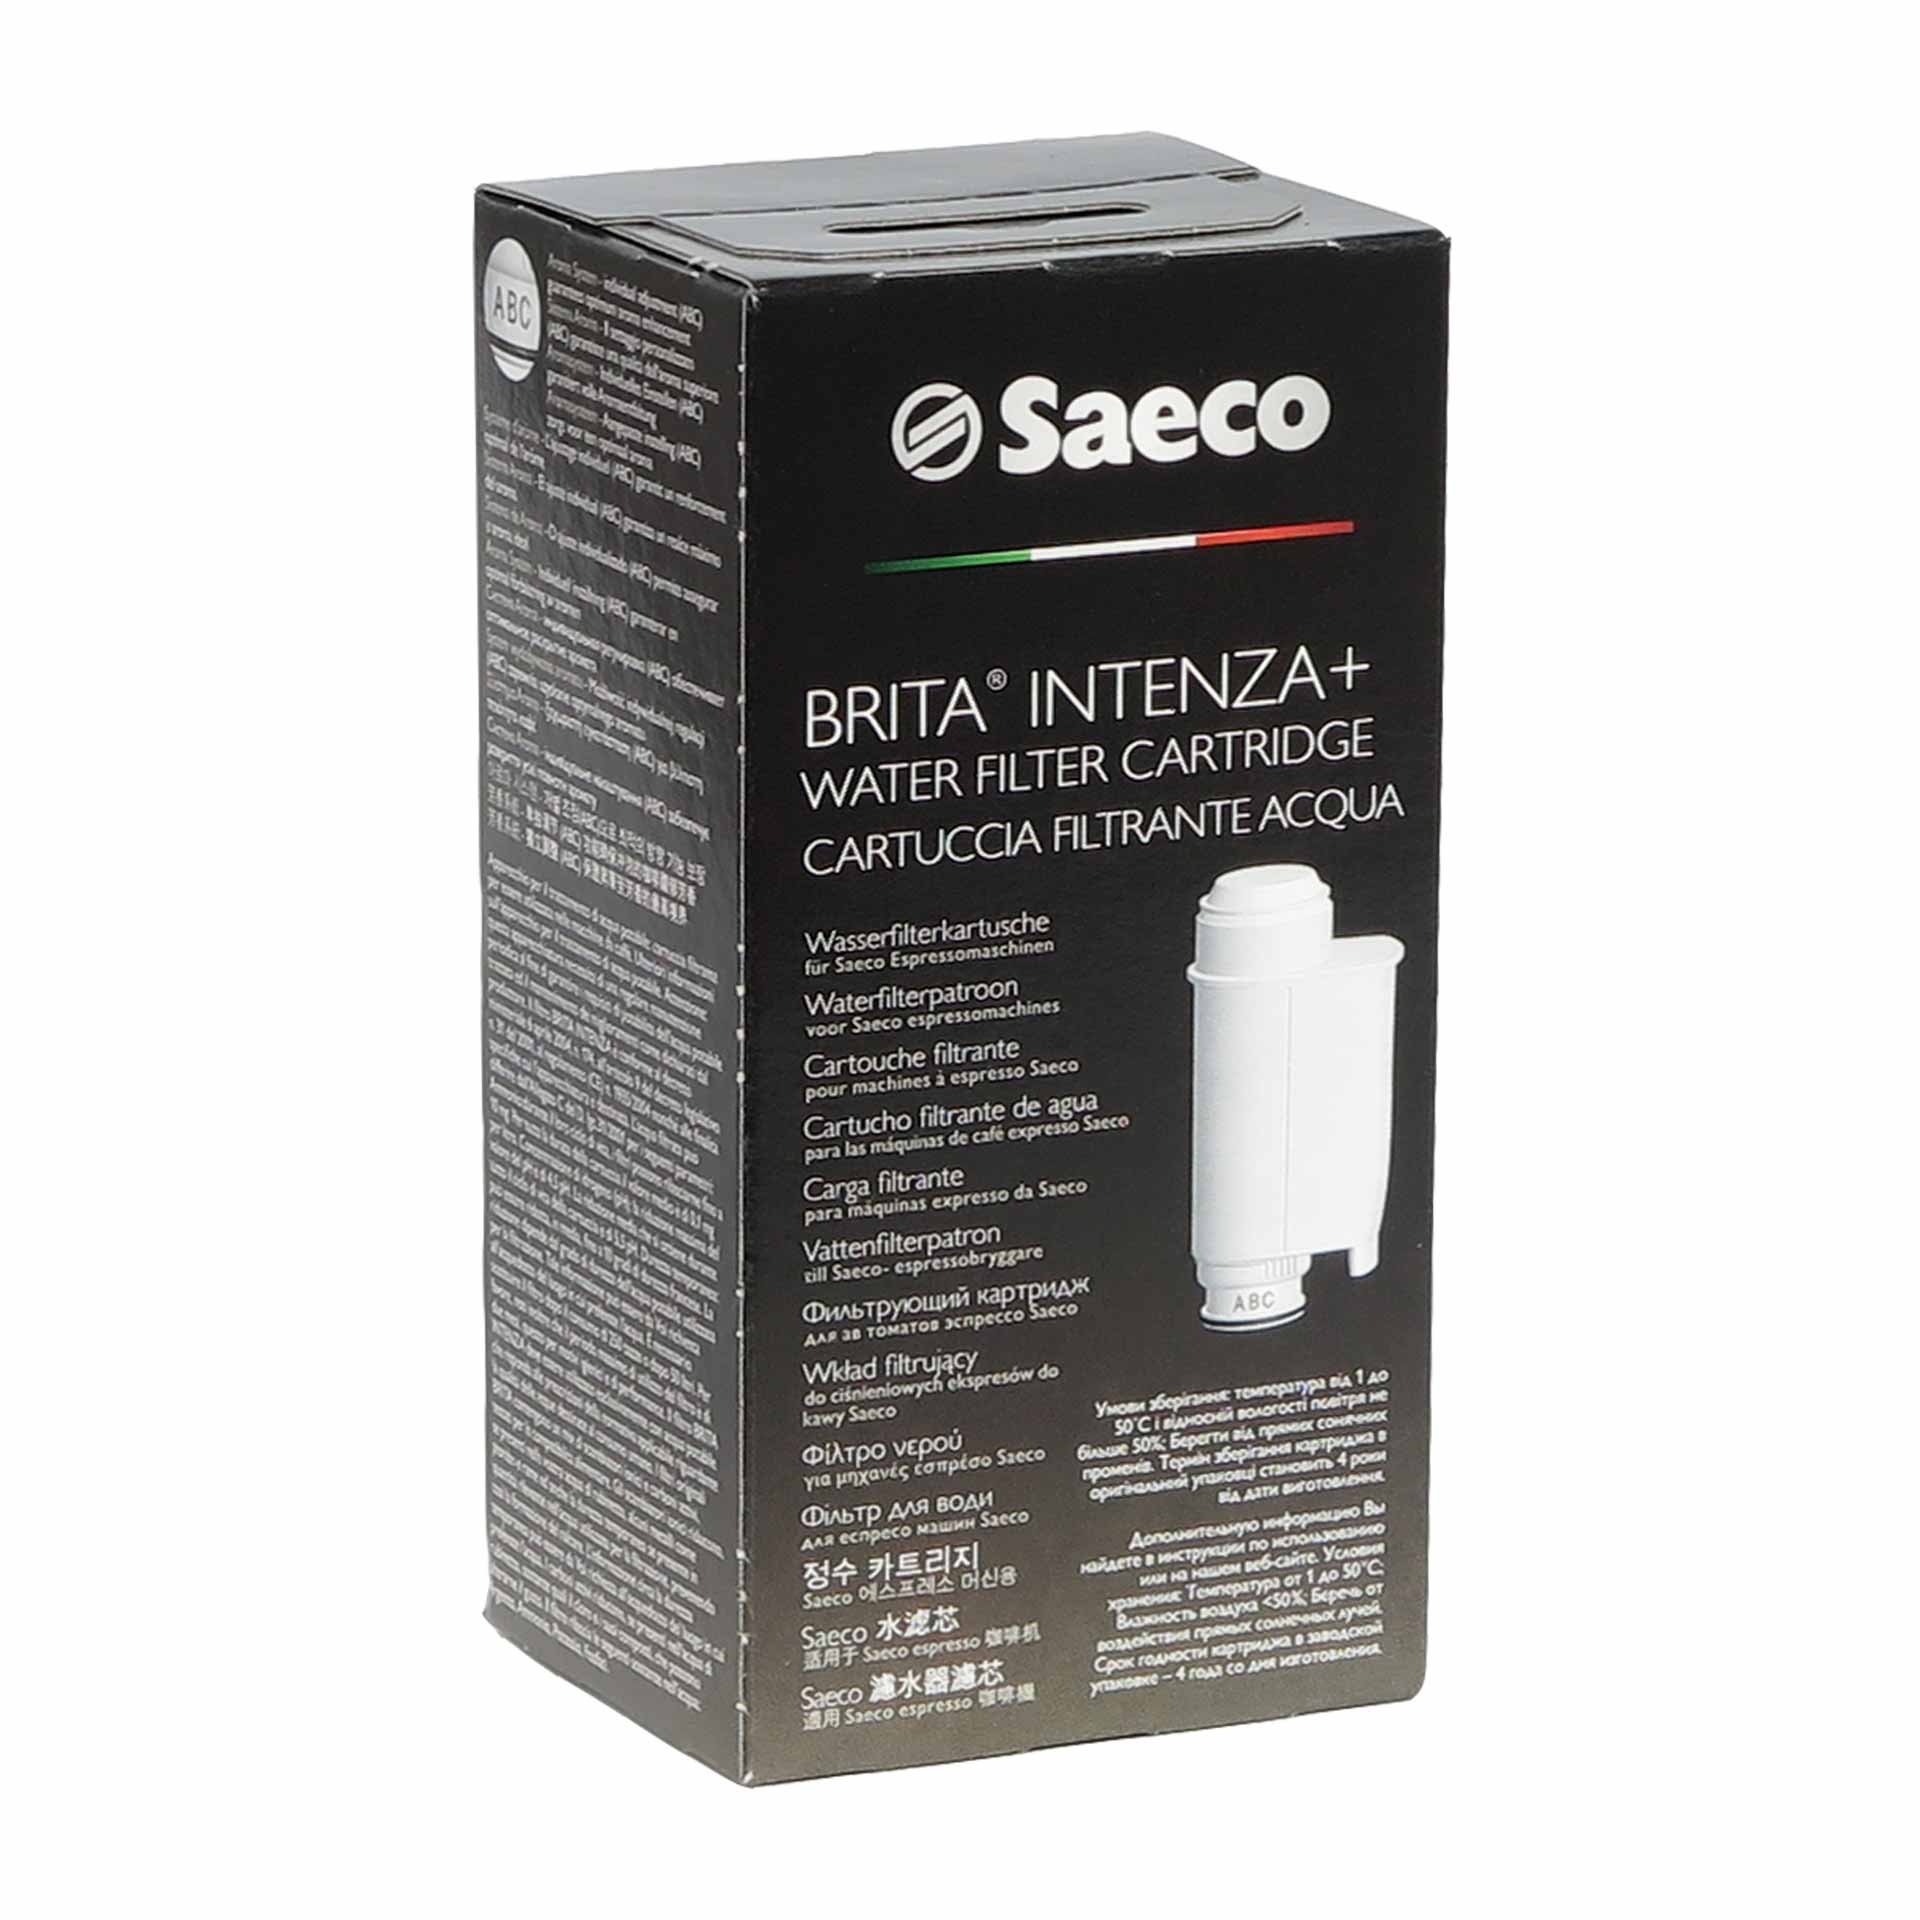 Saeco Brita Intenza+ Wasserfilter